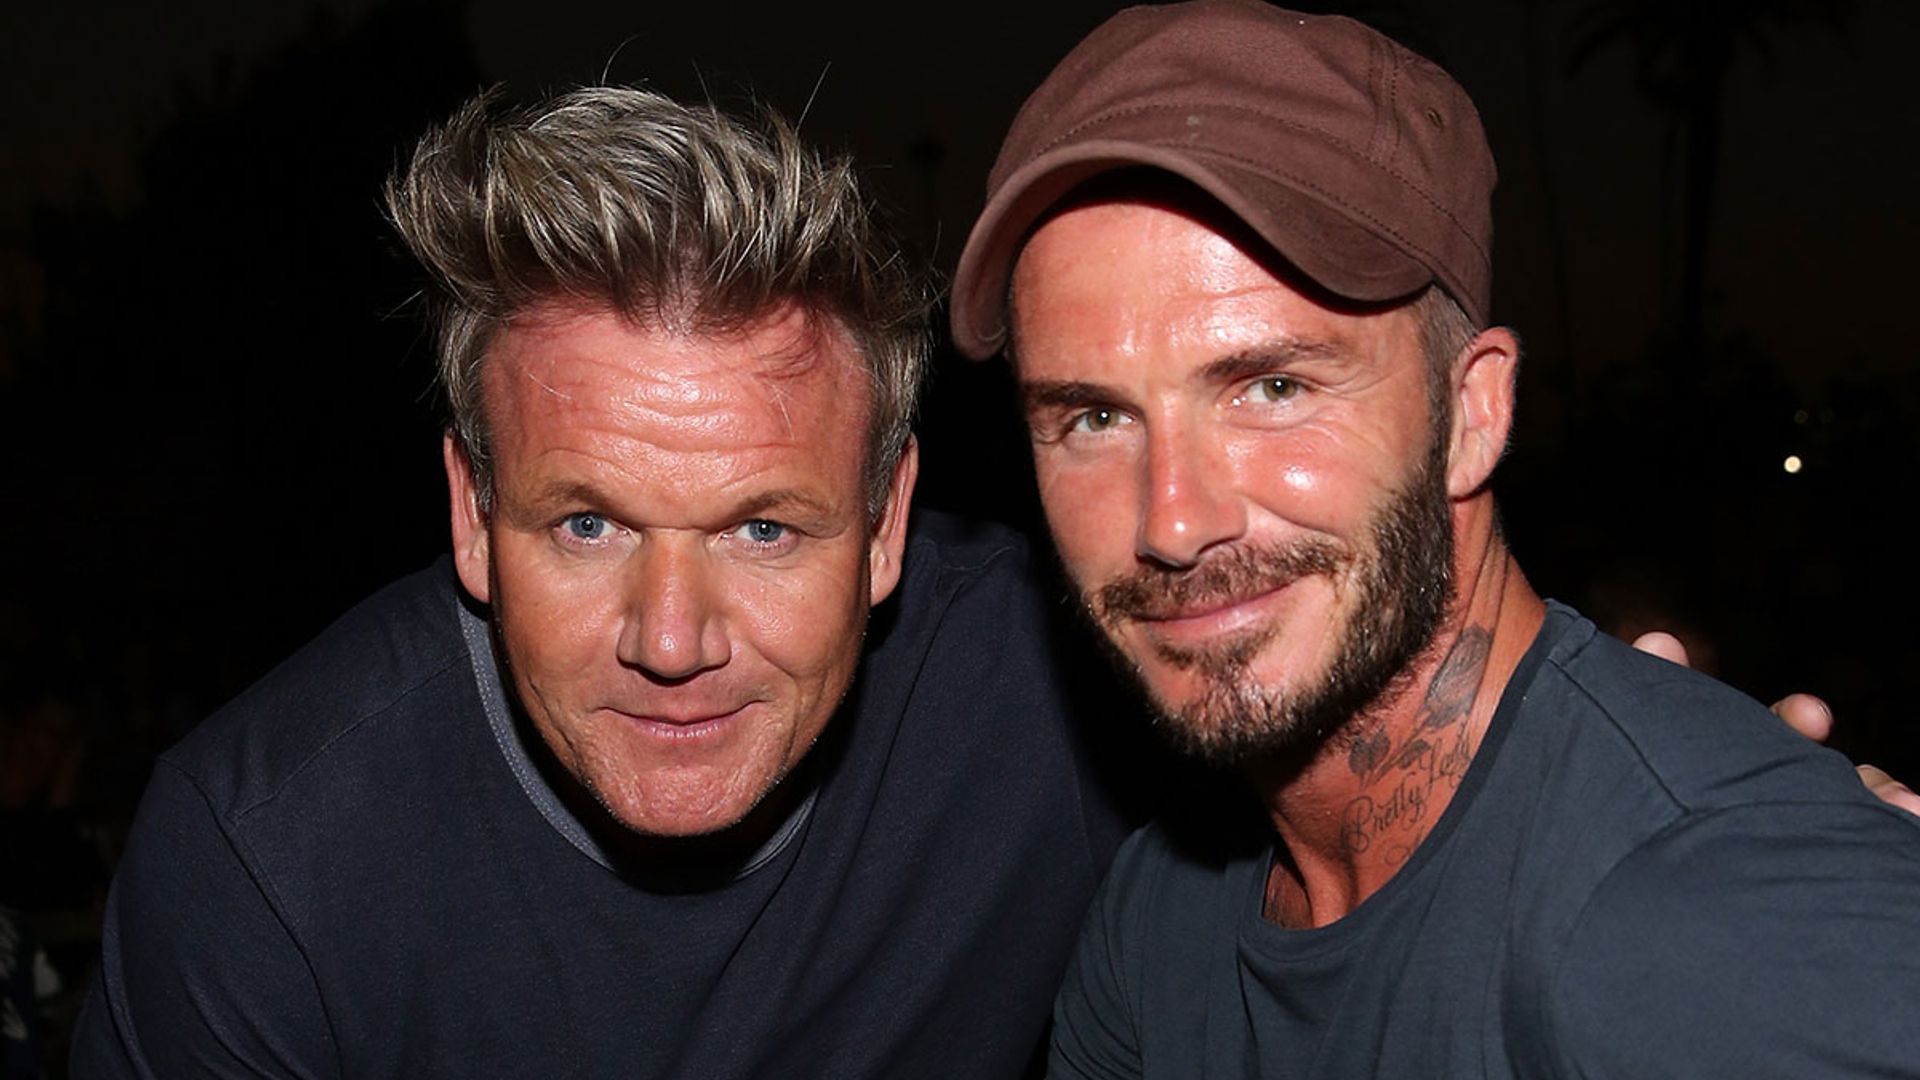 Gordon Ramsay reveals how David Beckham helped him recover after trauma